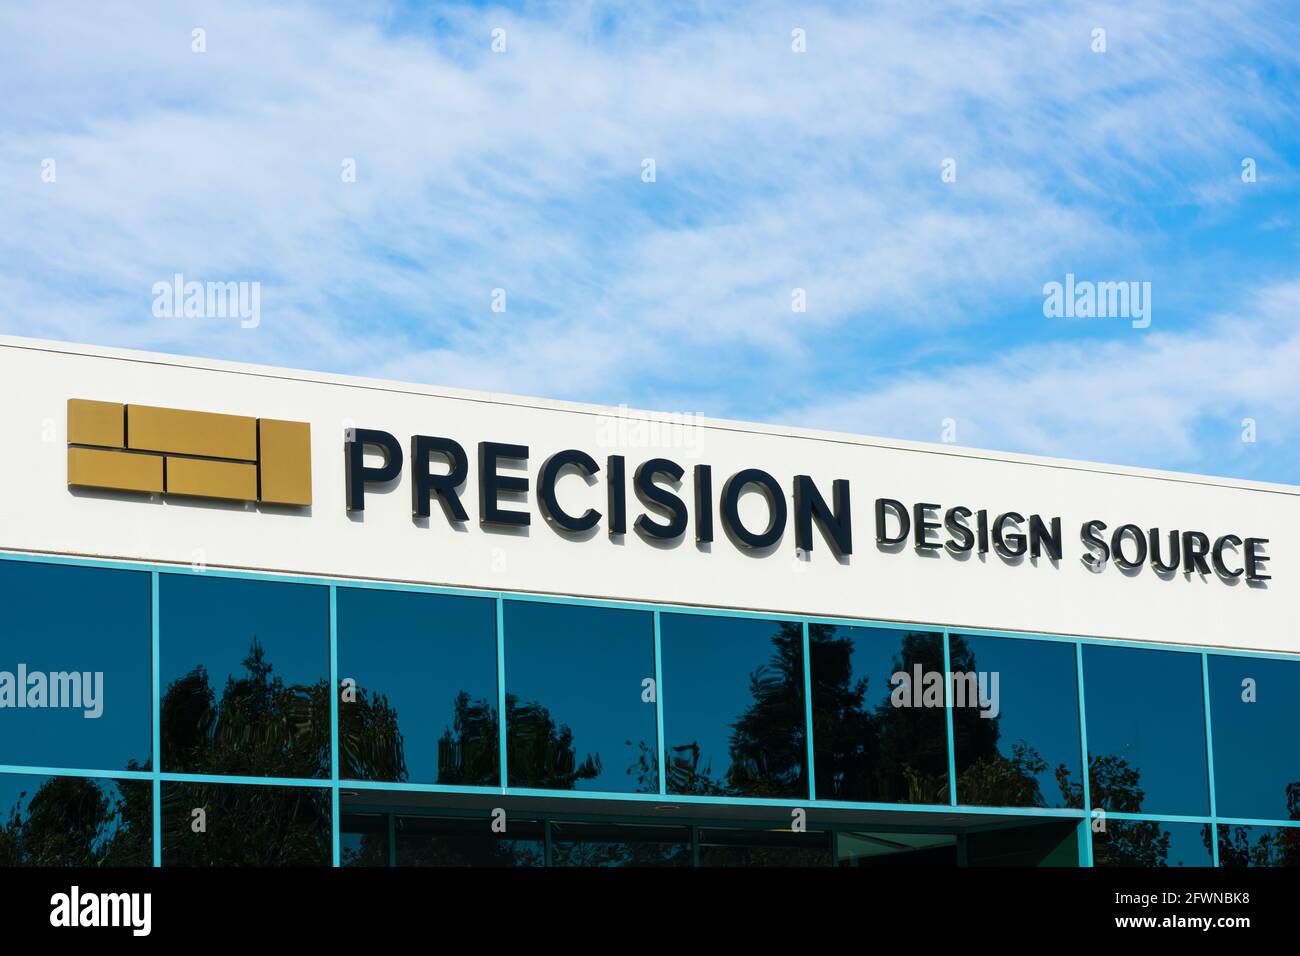 Precision Design Source signez un luxueux studio de design clé en main - Pleasanton, Californie, Etats-Unis - 2020 Banque D'Images